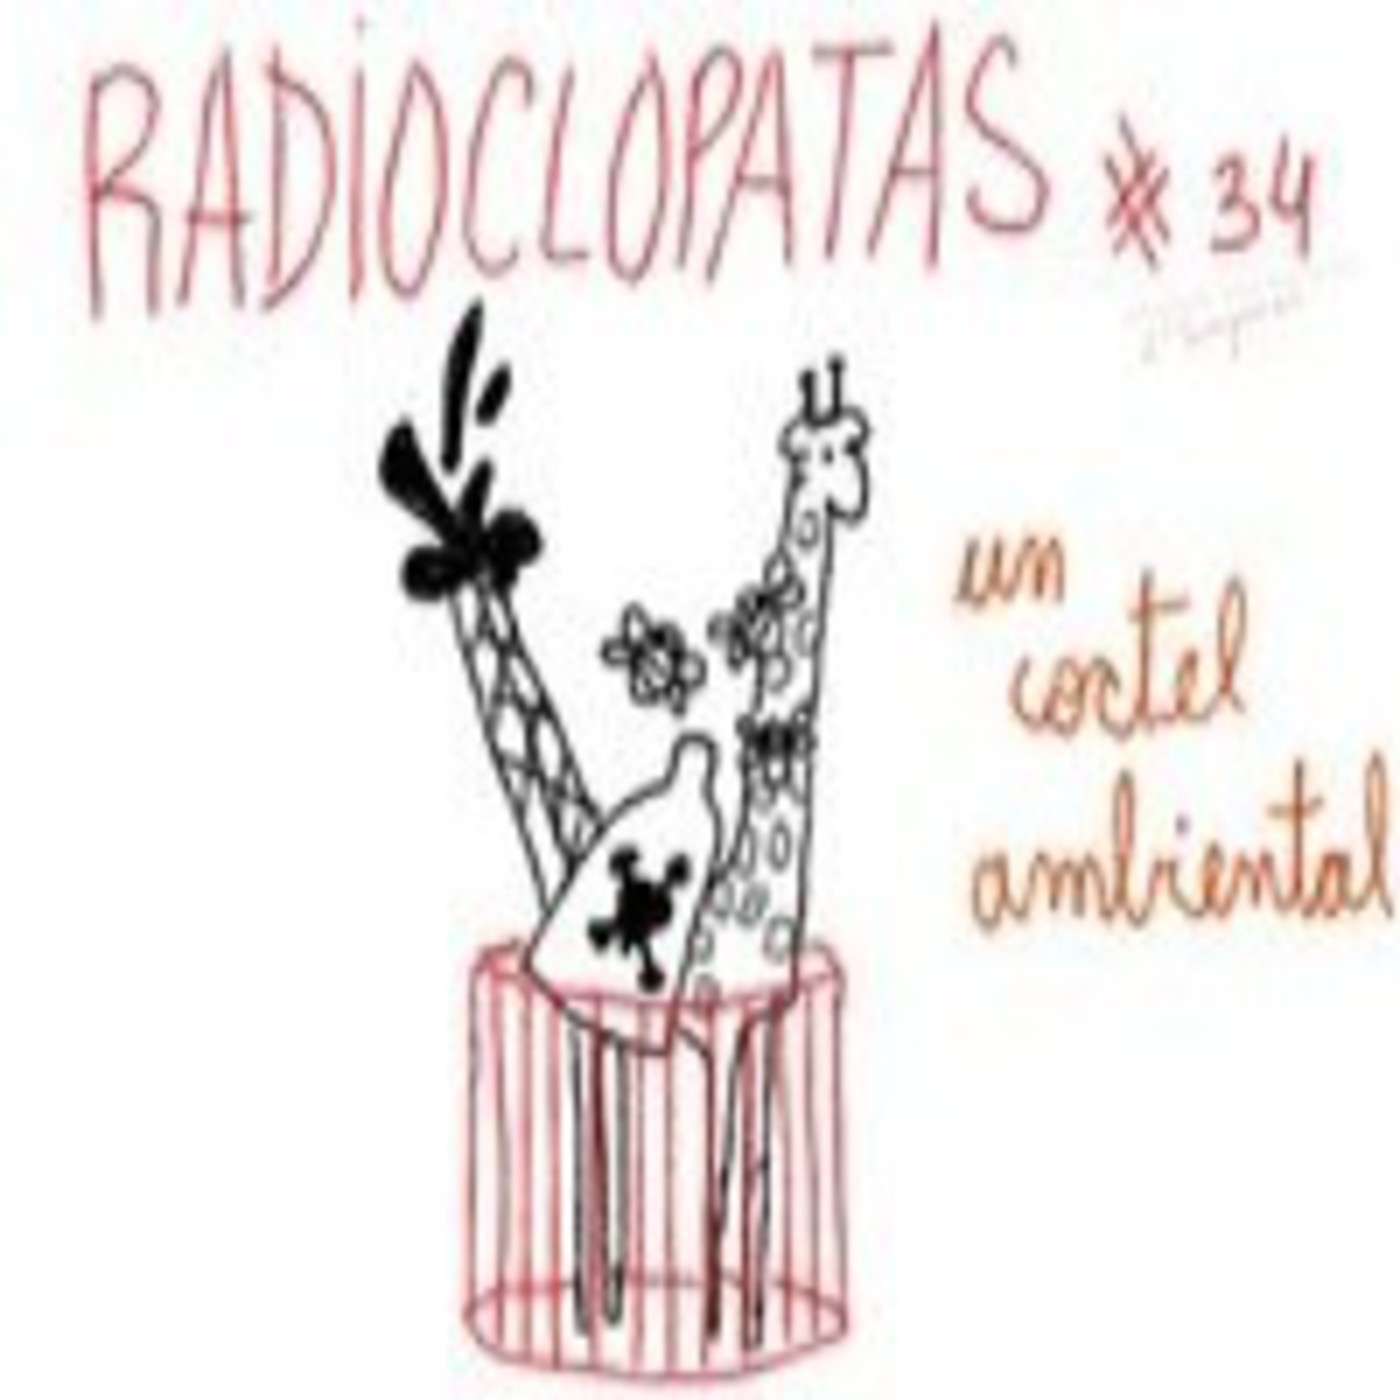 Radioclopatas  #33